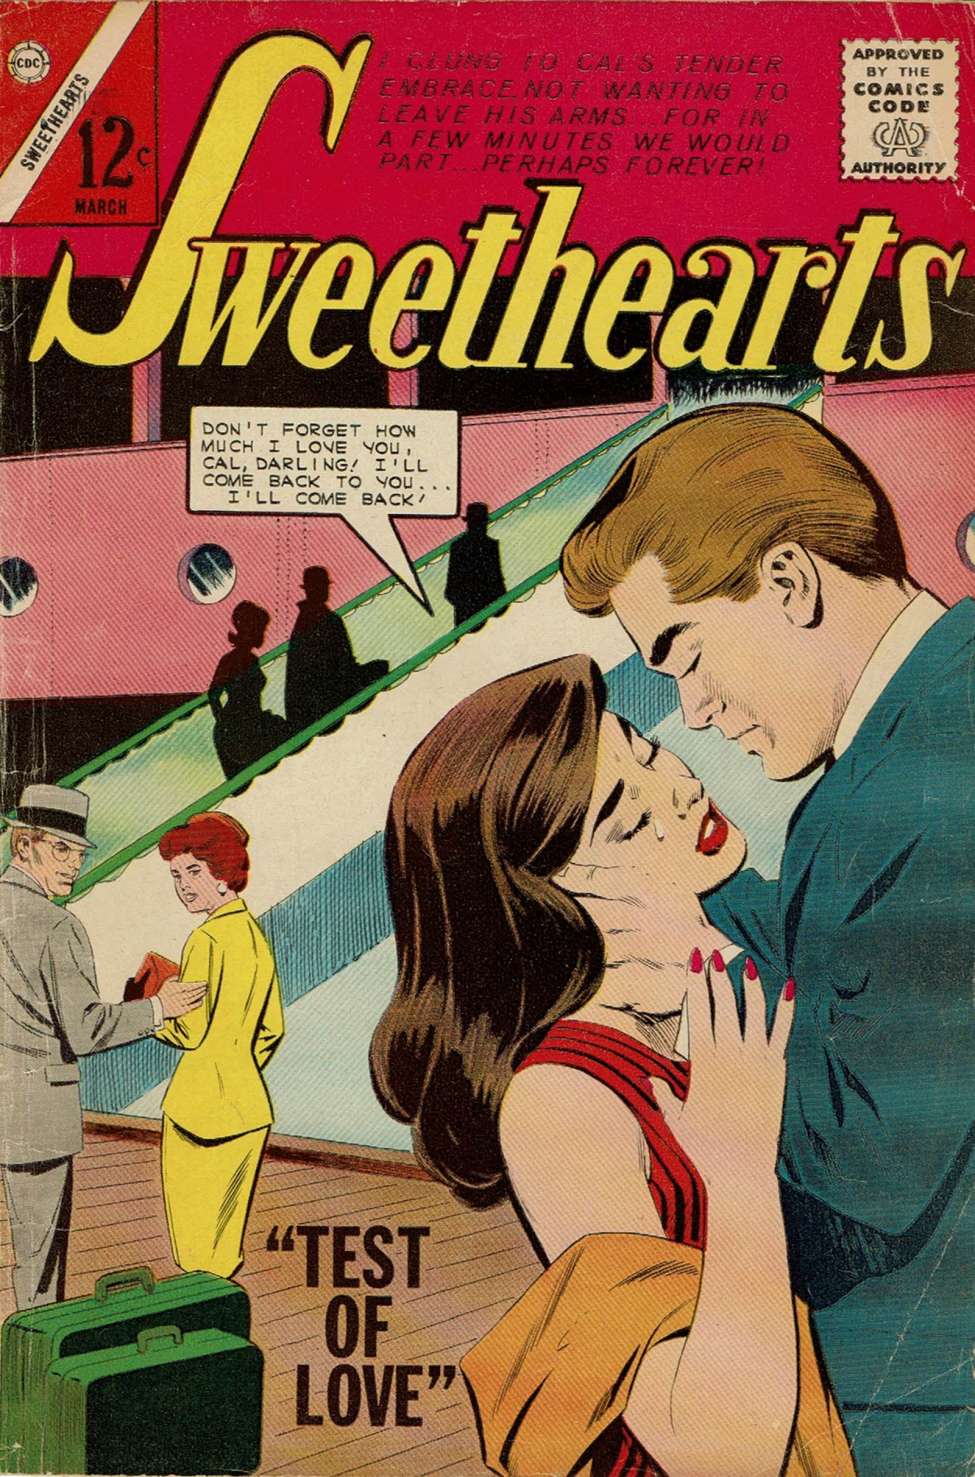 Sweethearts 076 Charlton Comic Book Plus 